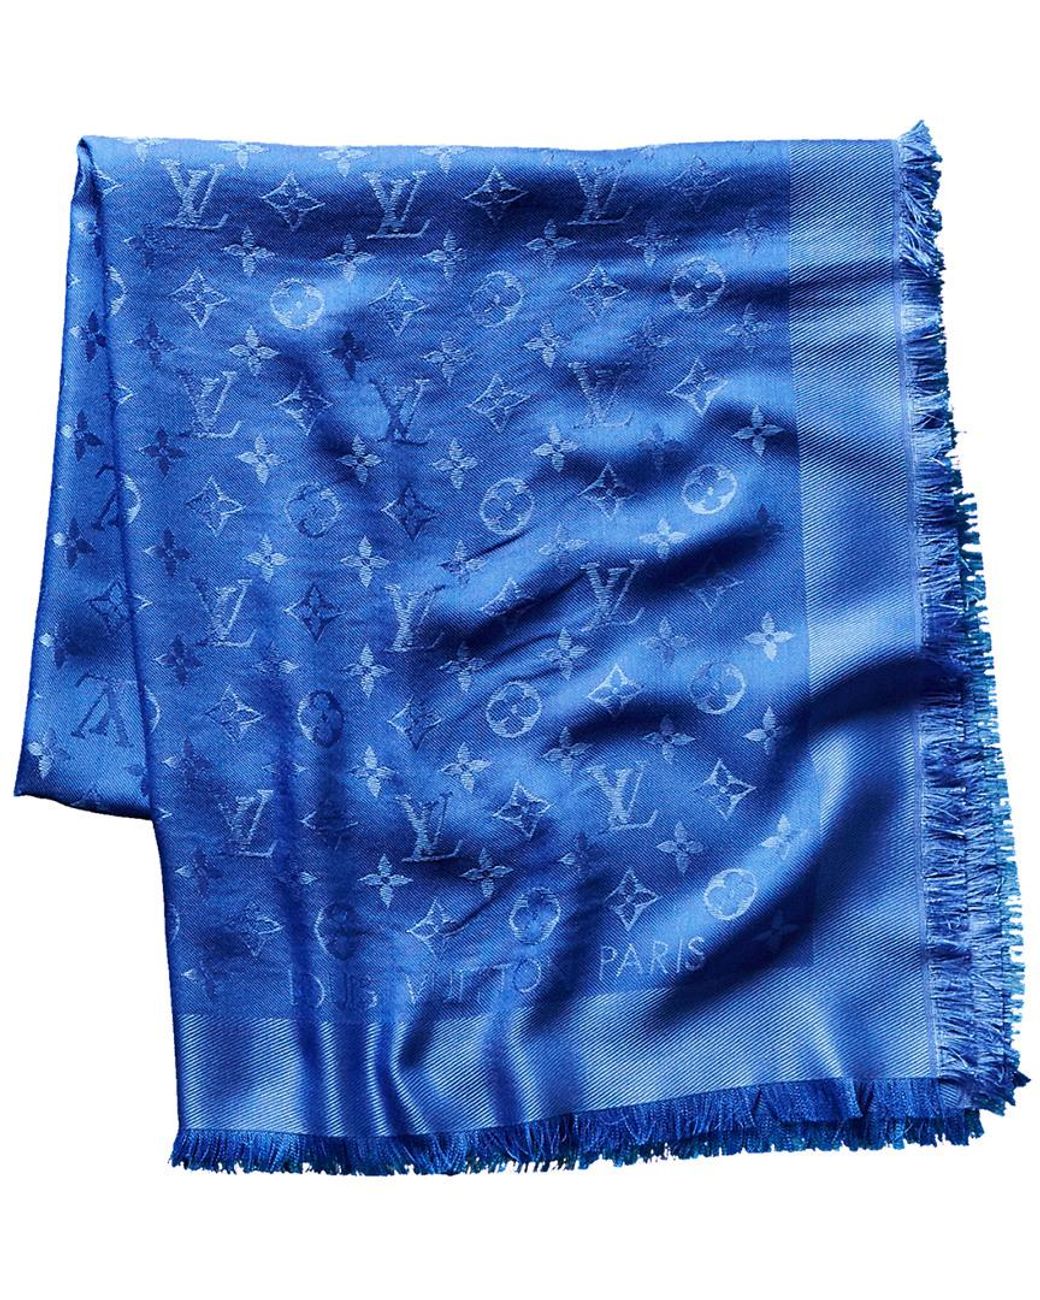 vuitton blue silk